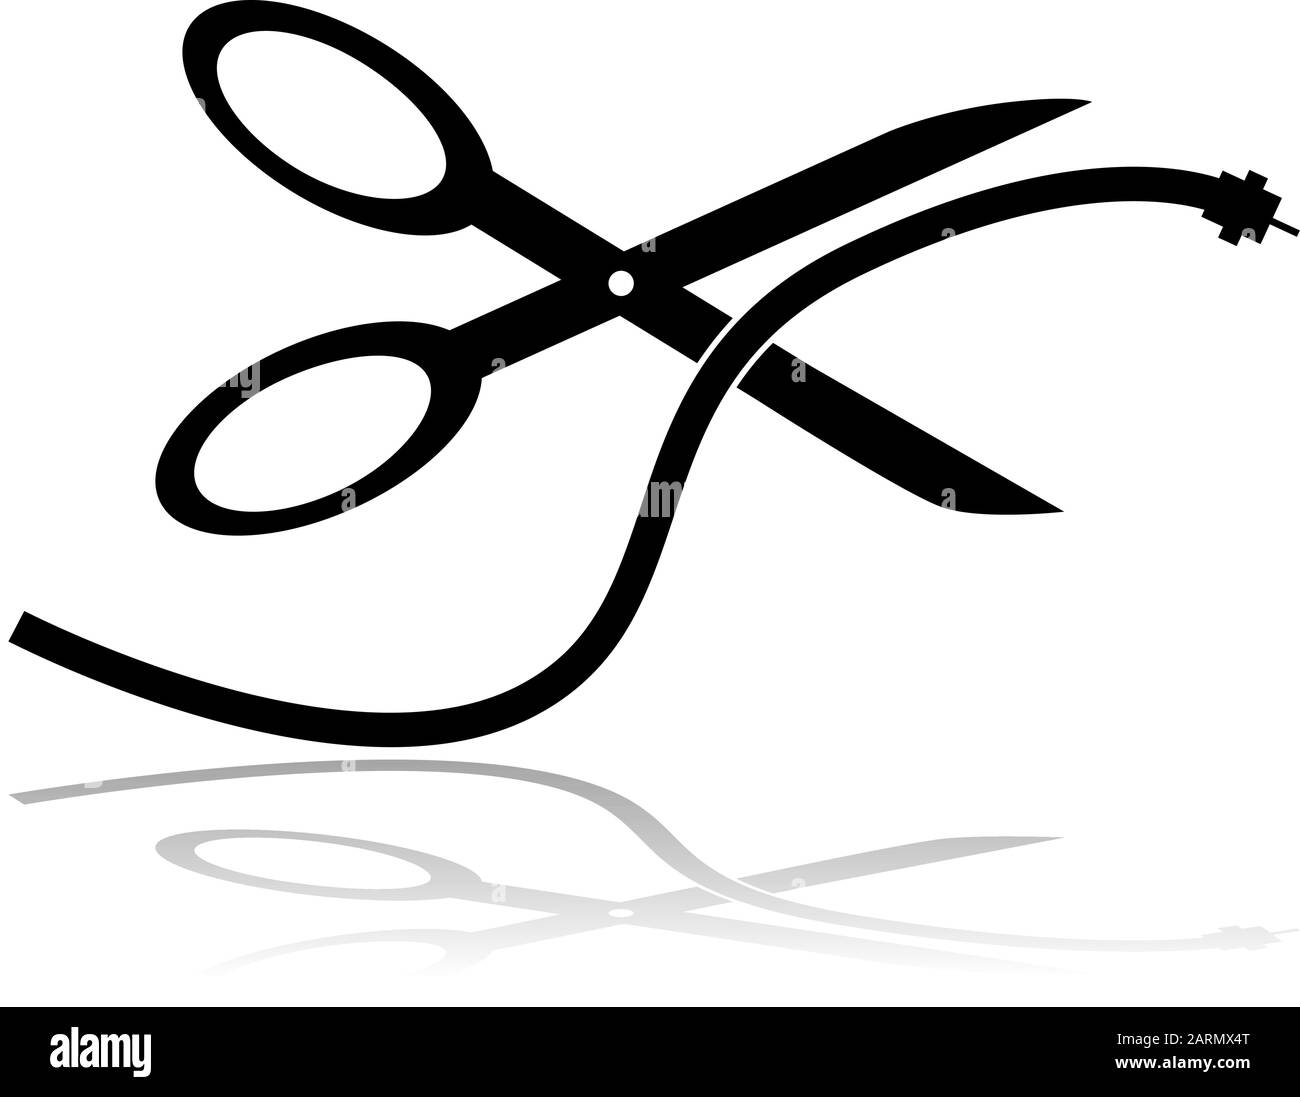 Illustration conceptuelle montrant une paire de ciseaux coupant un cordon de télévision par câble Illustration de Vecteur